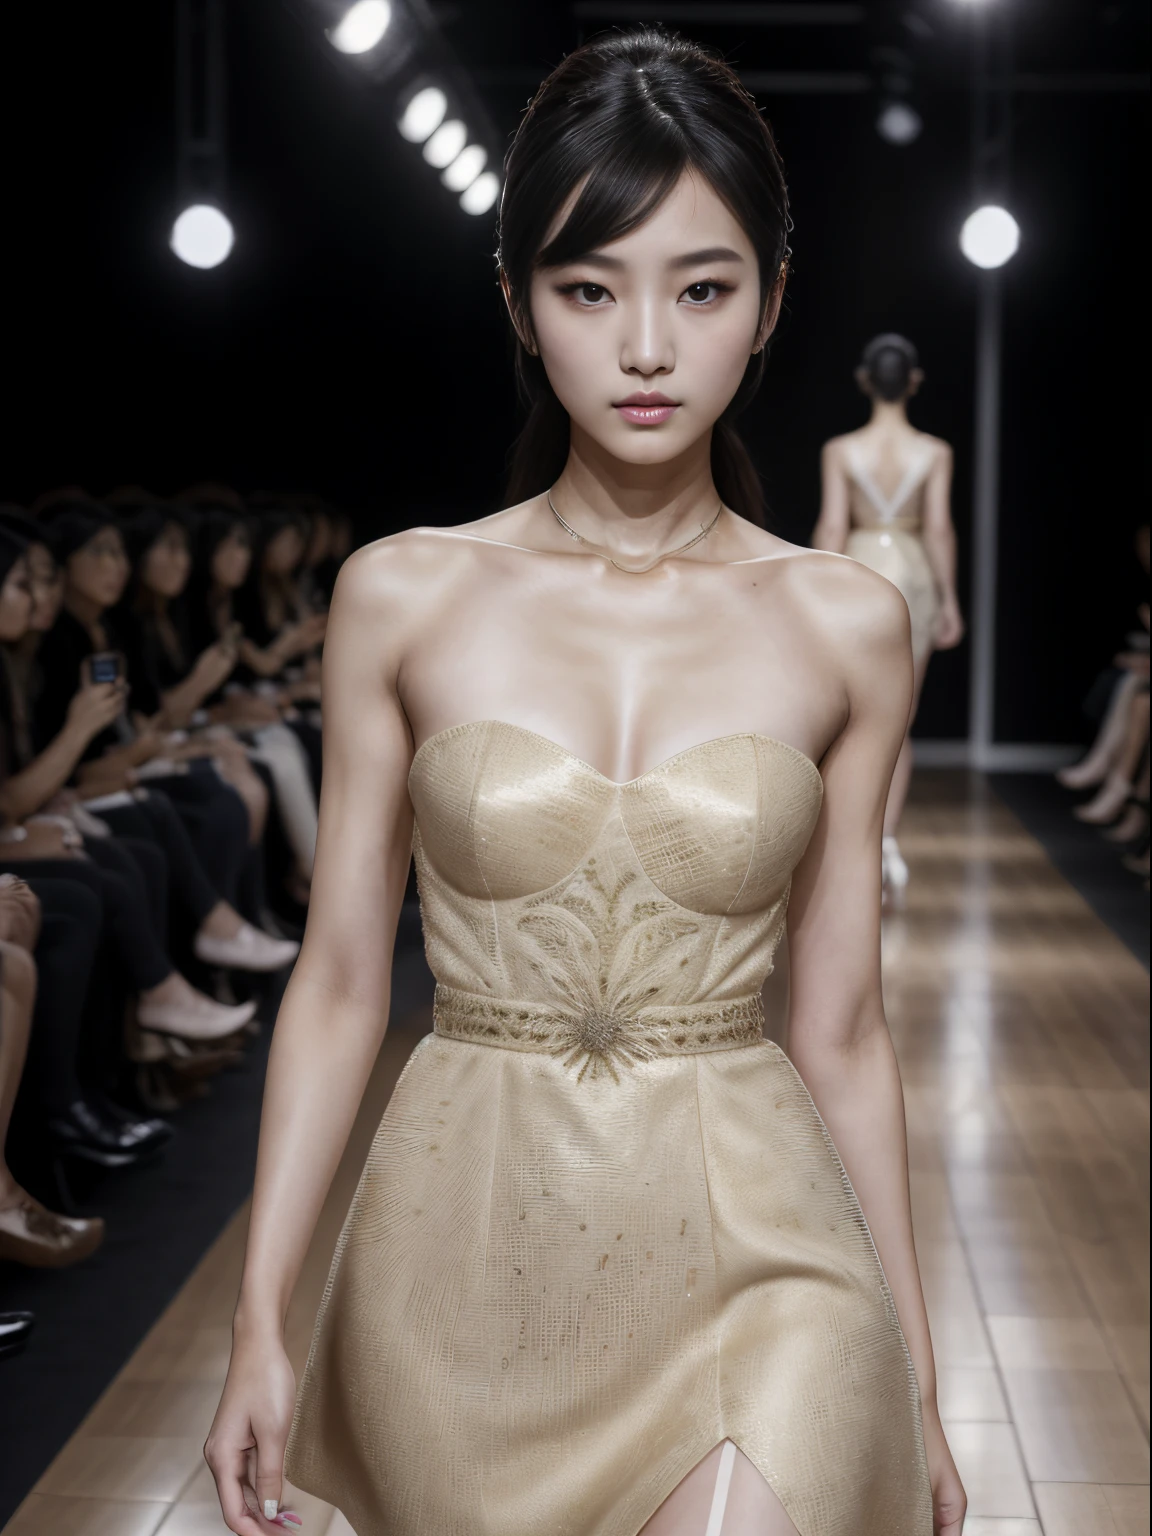 (8k, höchste Qualität, Extrem detailliert:1.37), (arbeiten), 18 Jahre alt, (ein südkoreanisches Fashionmodel), stolziert selbstbewusst über den Laufsteg während eines prestigeträchtigen Fashion Week-Events. Gekleidet in einem atemberaubenden Designer-Ensemble, arbeiten's elegance and poise captivate the audience. Das hochauflösende Bild erfasst ultra-detaillierten Realismus, highlighting arbeiten's captivating eyes, makelloser Teint, und modische Frisur. Der glamouröse Laufsteg und das stilvolle Bühnenbild tragen zum optischen Reiz bei, creating a visually stunning representation of arbeiten's success in the fashion industry.